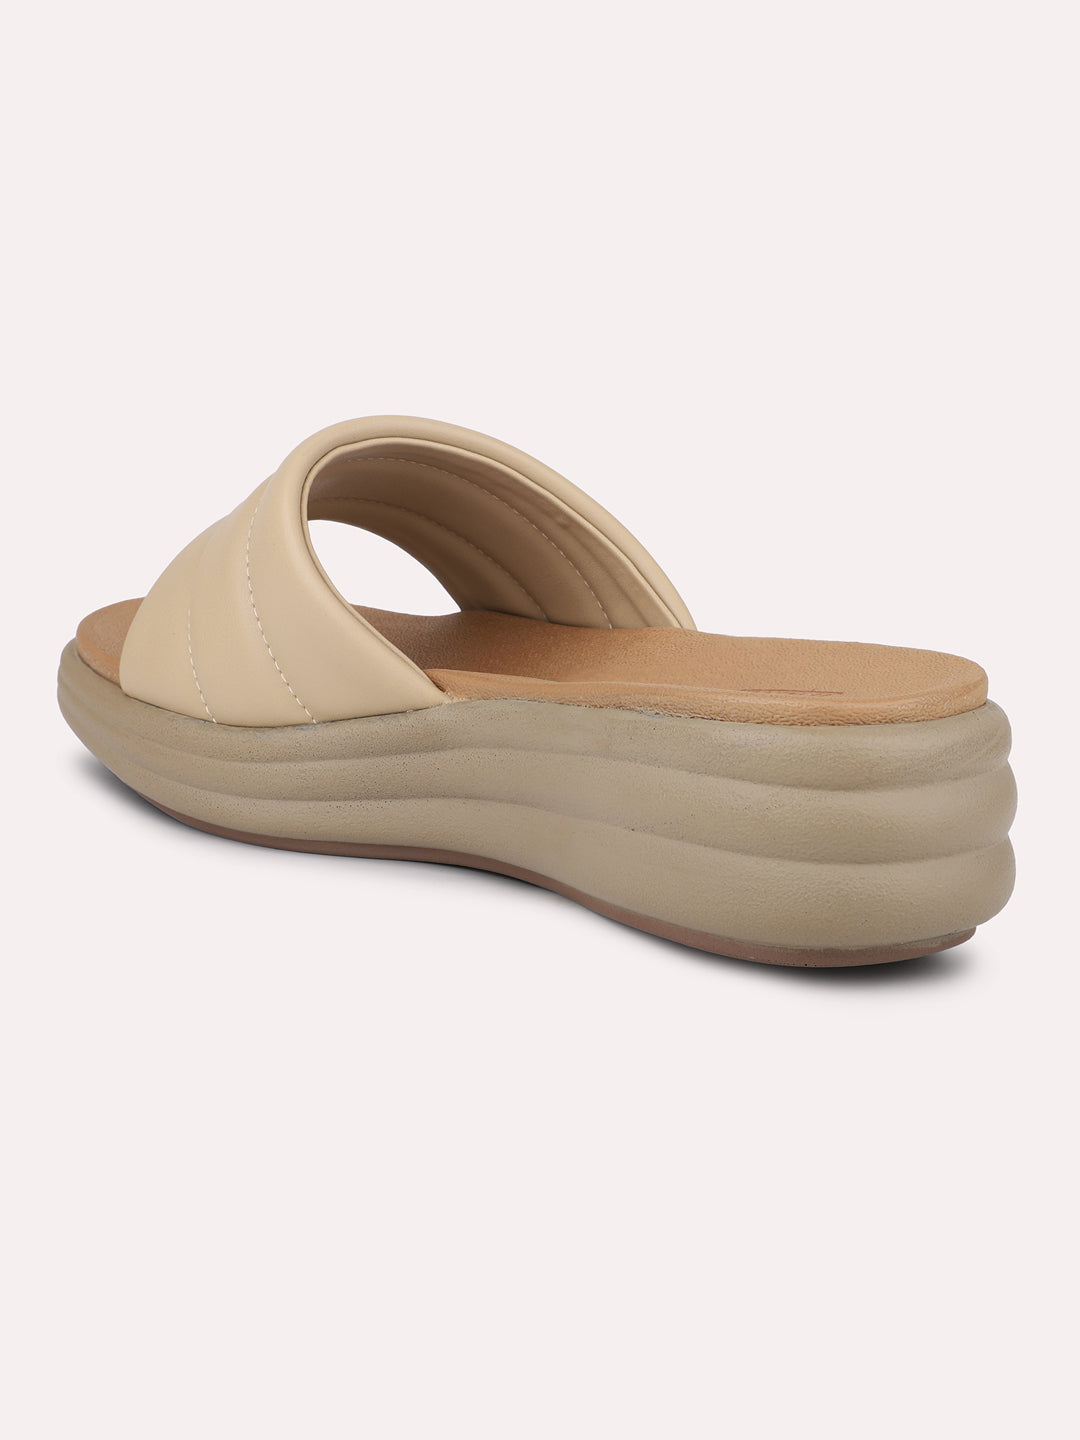 Women Beige Textured Open Toe Comfort Sandals